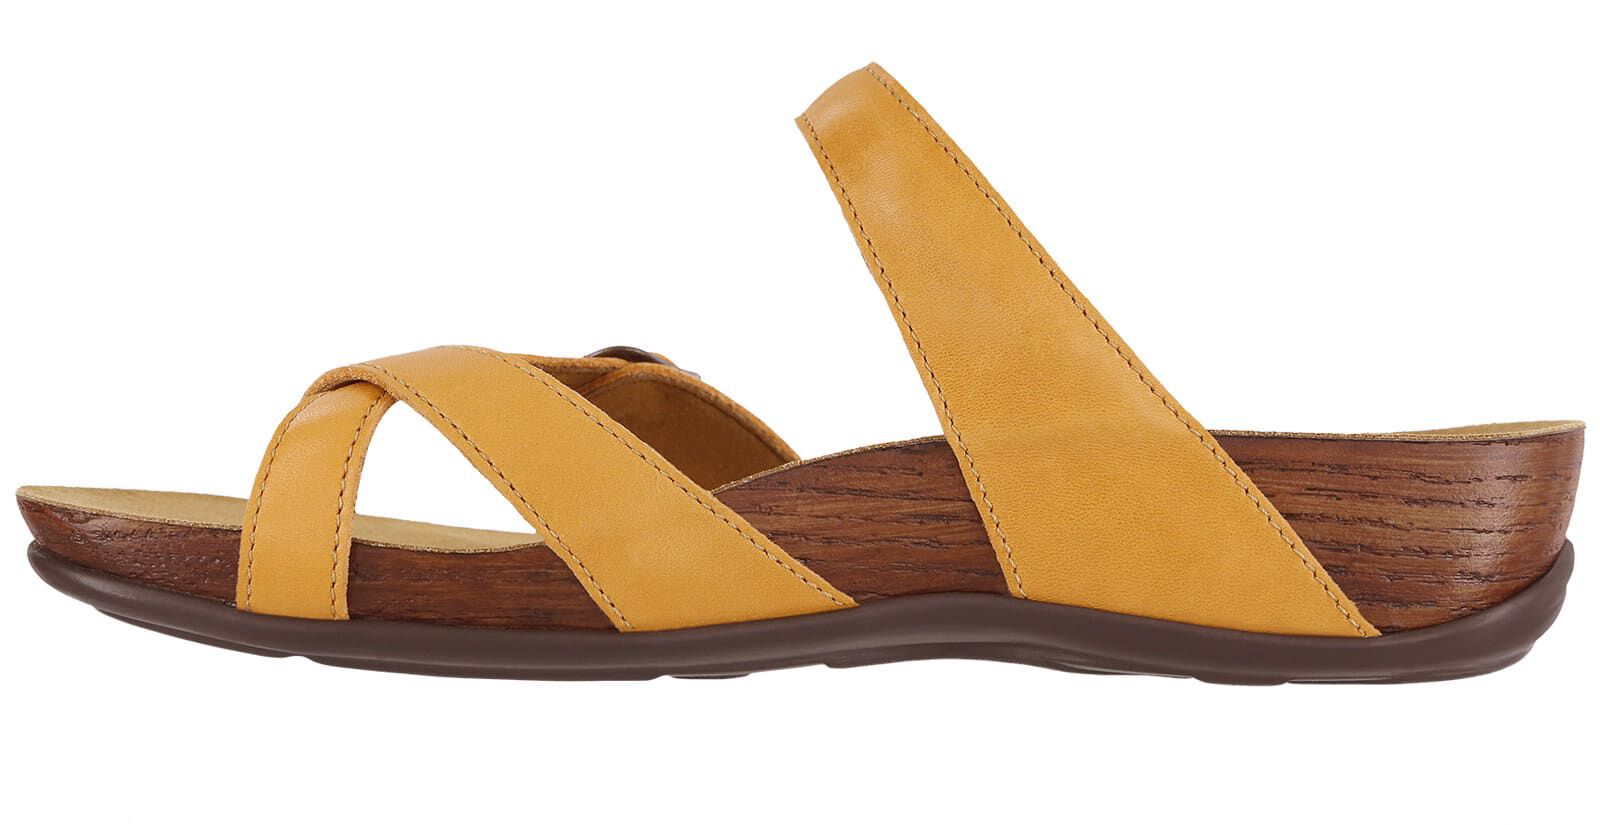 women's sandals with big toe loop